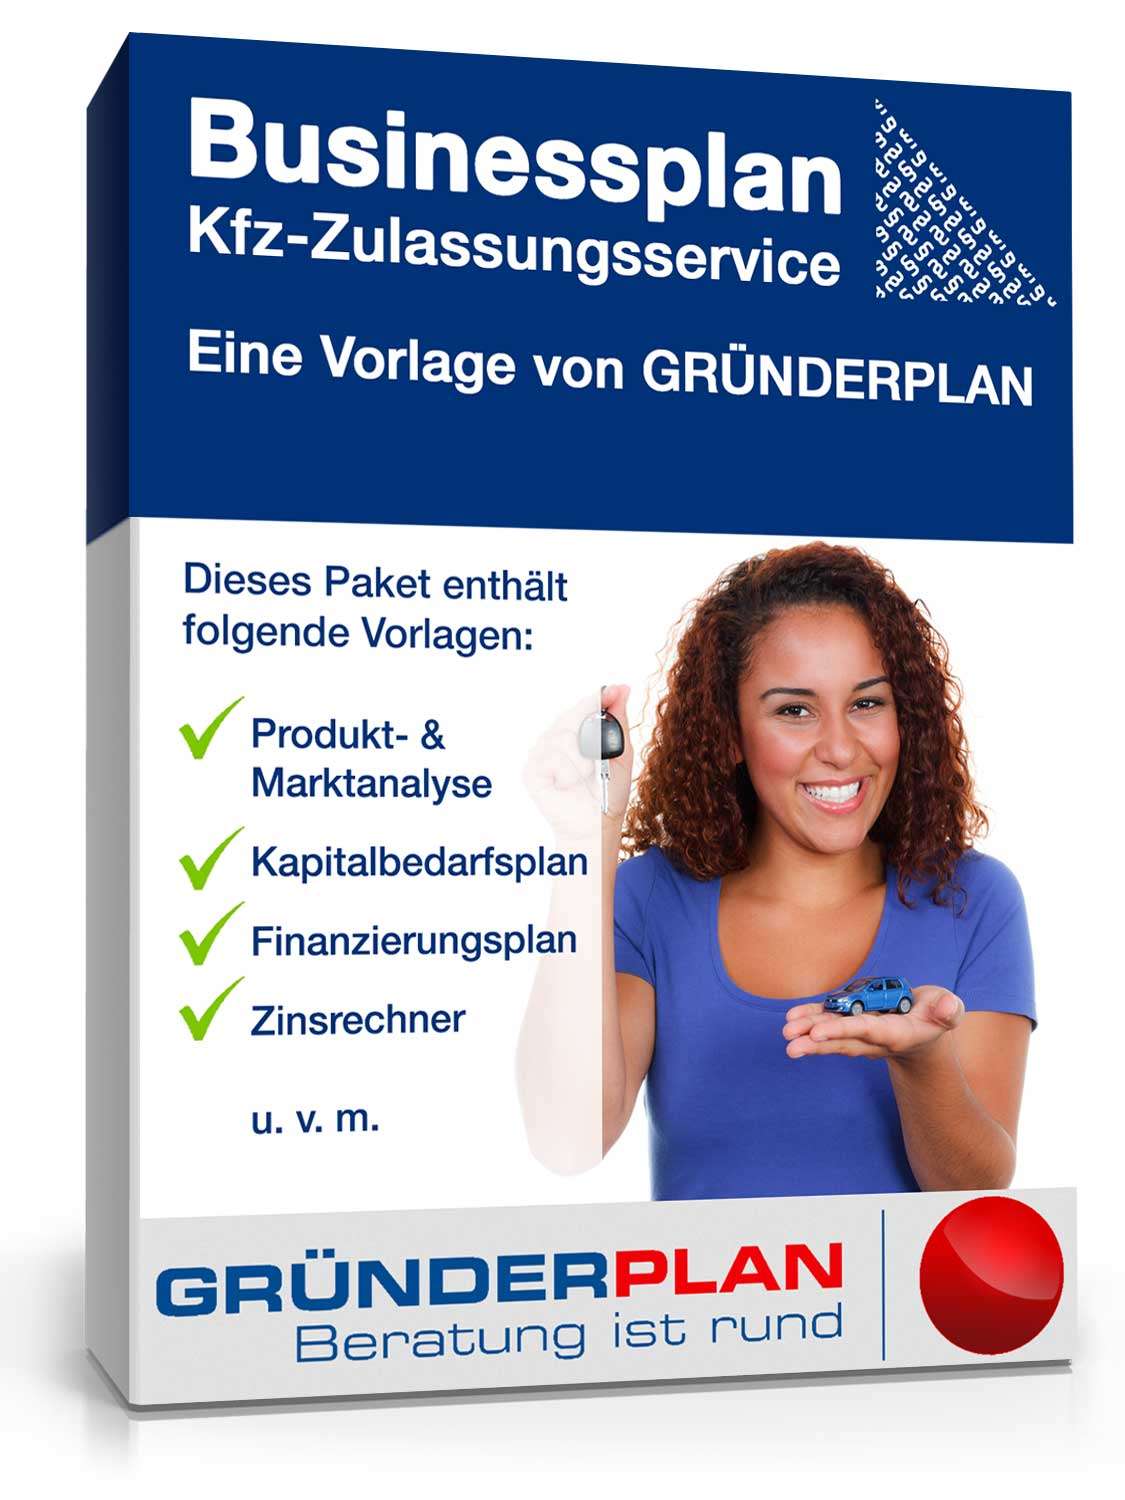 Hauptbild des Produkts: Businessplan Kfz-Zulassungsservice von Gründerplan